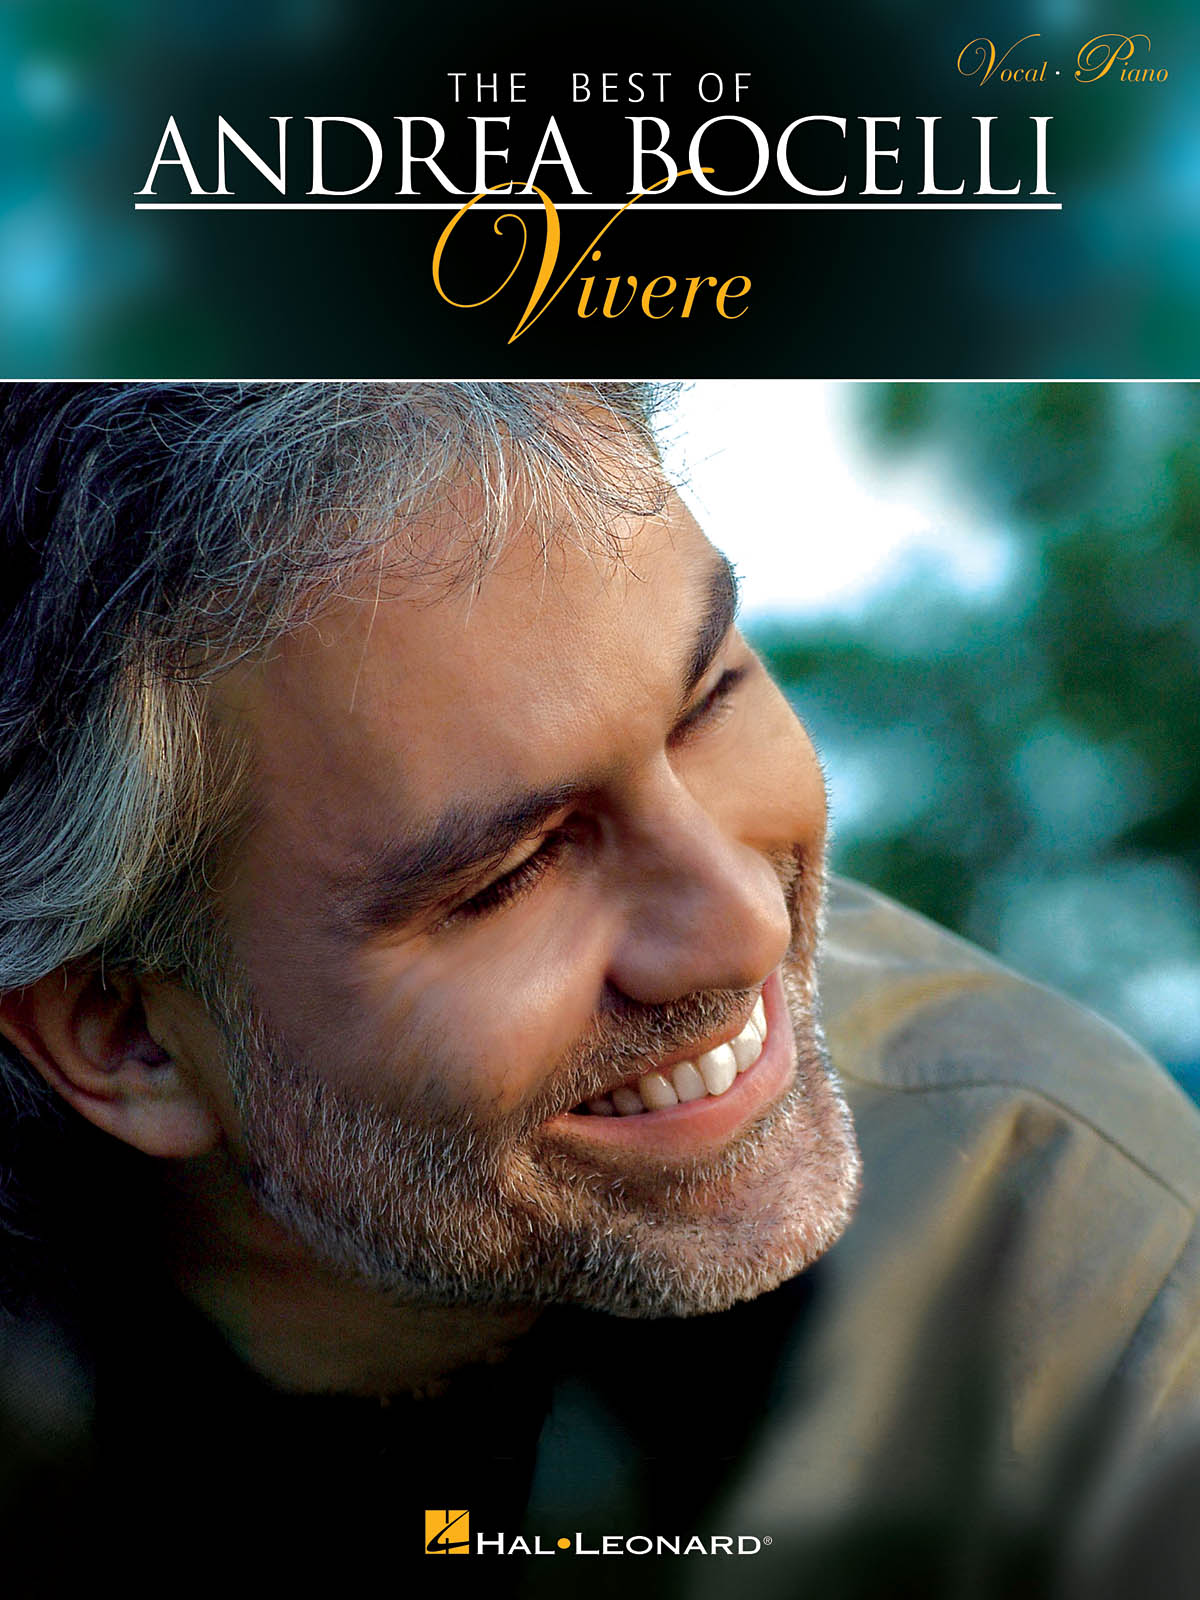 Андреа Бочелли. Андреа Бочелли vivere. The best of Andrea Bocelli vivere. Andrea Bocelli Greatest Hits - the best of Andrea Bocelli. Vivo per lei андреа бочелли